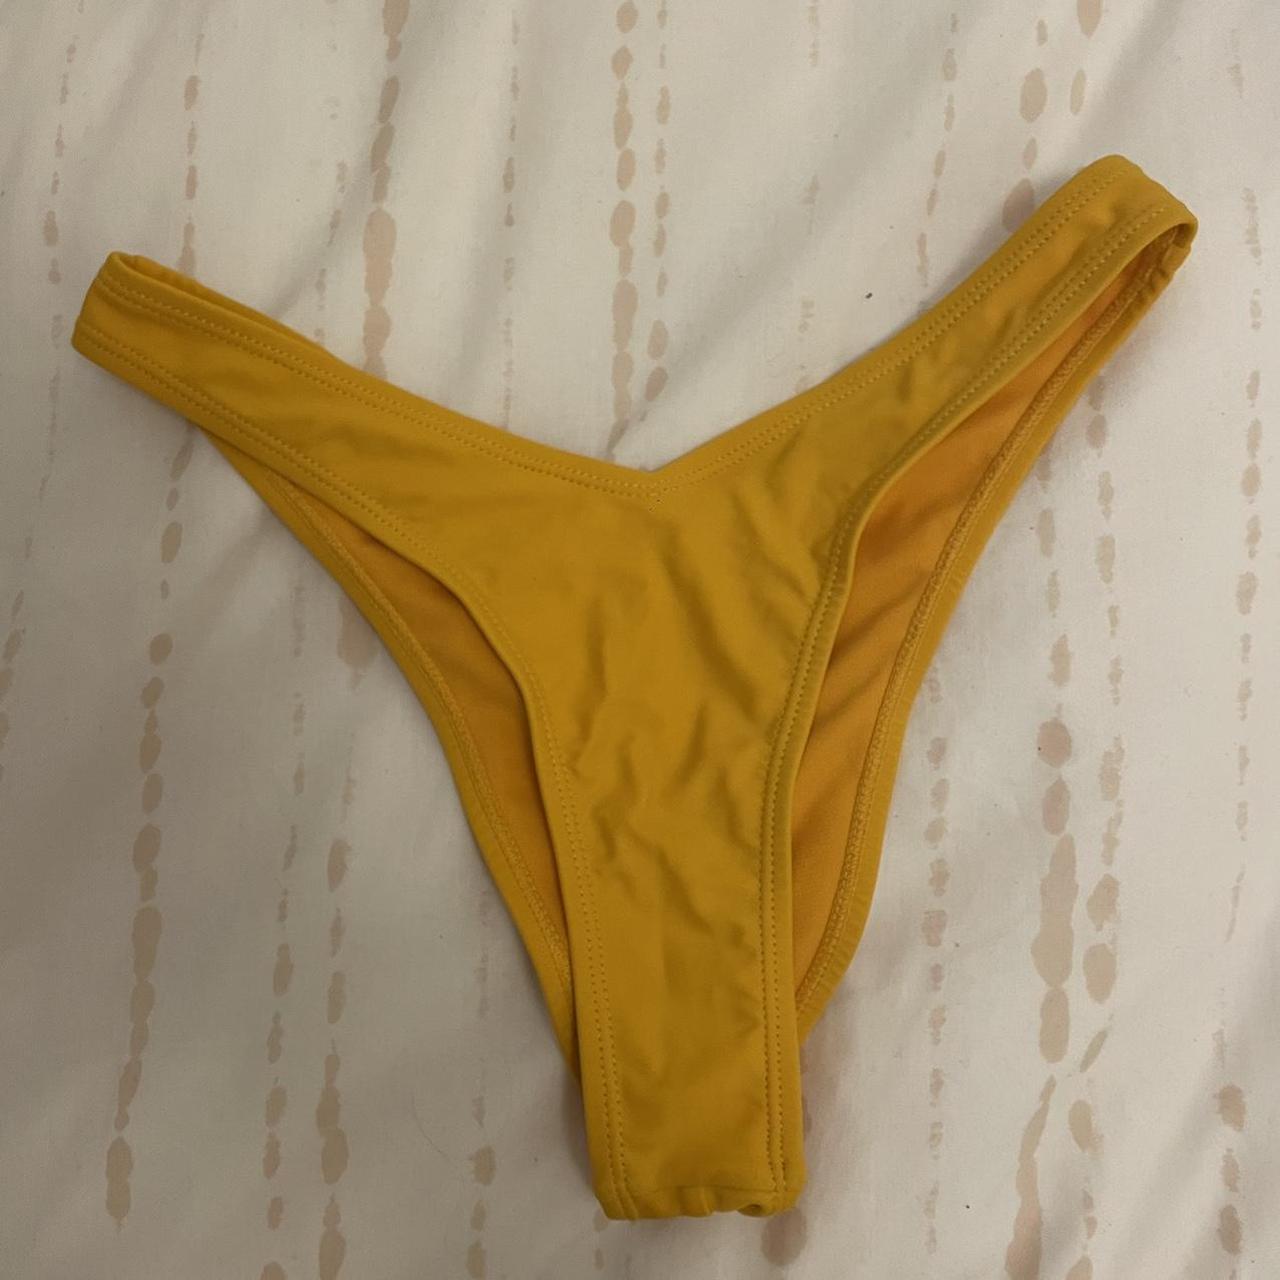 NAKD bikini set in yellow in XS, colour best... - Depop